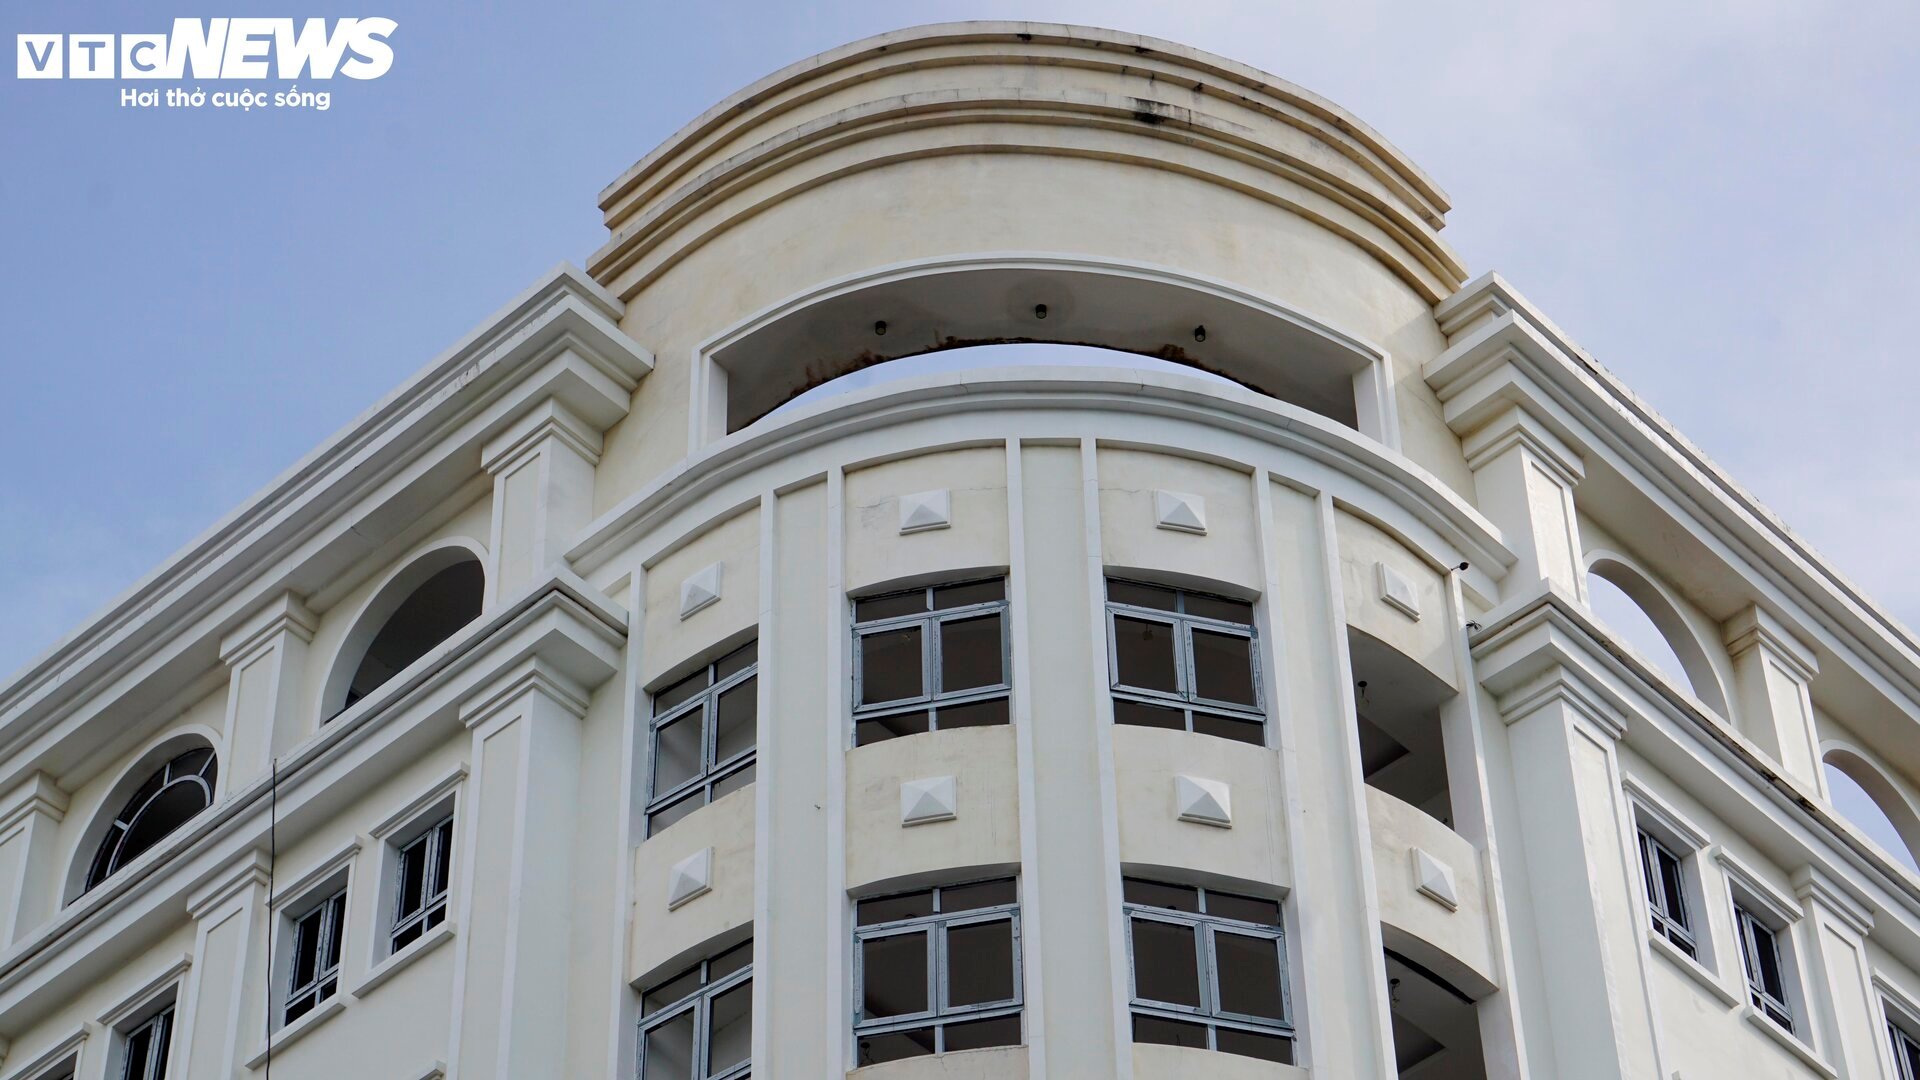 Tòa nhà trăm tỷ, xây gần 10 năm chưa xong của nữ giám đốc vừa bị bắt ở Bình Định - Ảnh 6.